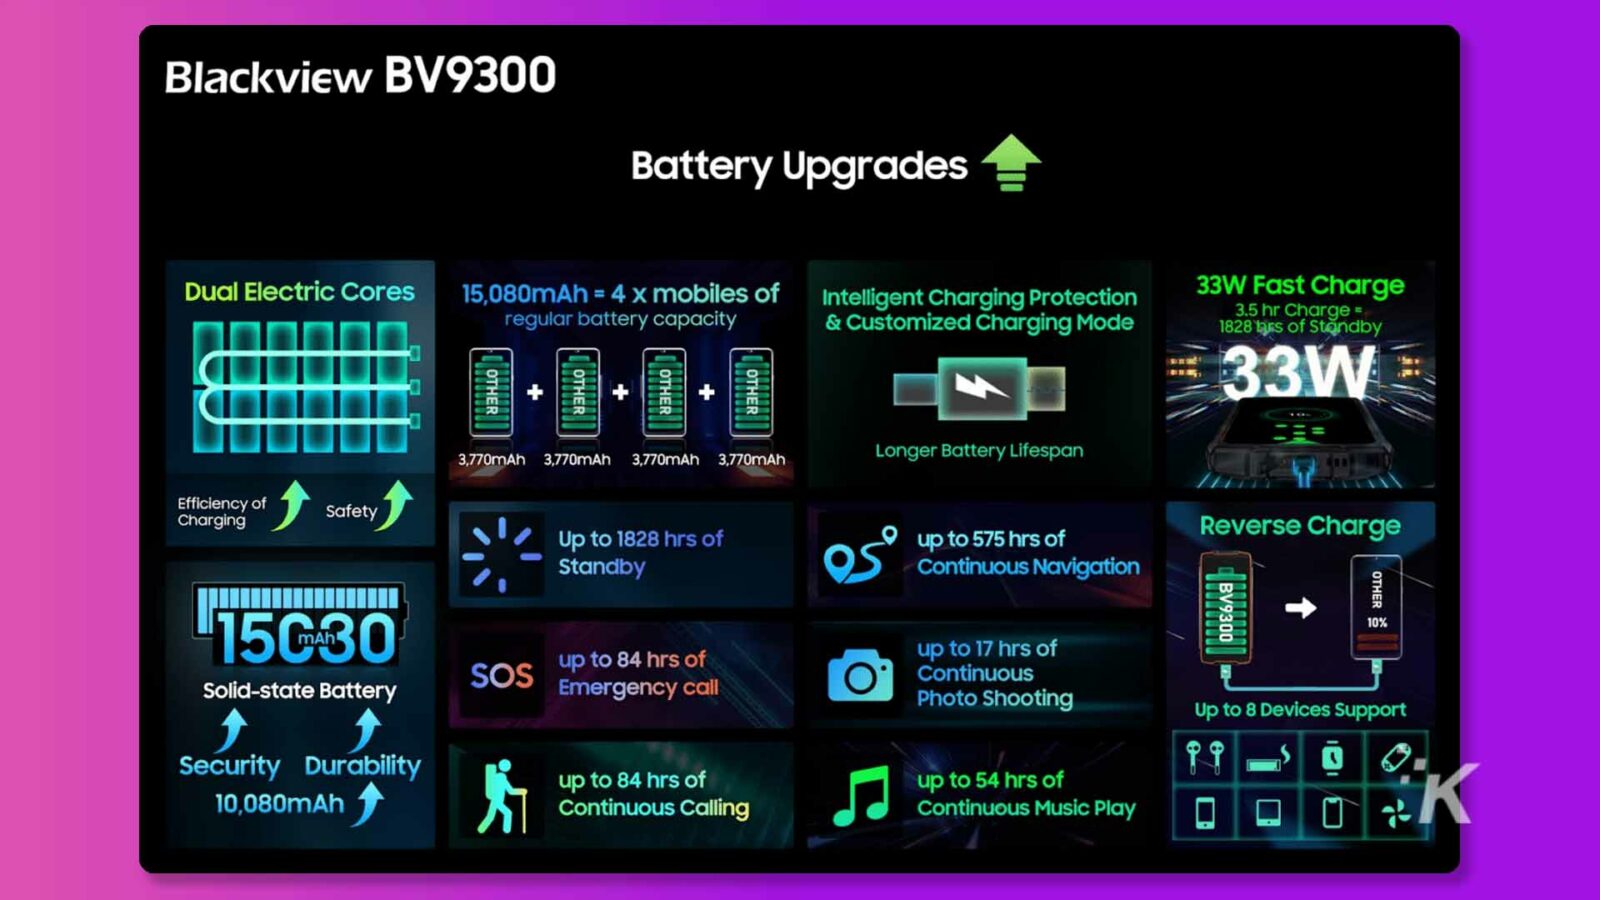 この画像は、Blackview BV9300 バッテリーの機能と利点を示しています。このバッテリーは、15,080mAh の容量と、カスタマイズされた充電モードによる 33W の高速充電を備え、より長いバッテリー寿命、効率的な充電、および最大 1828 時間のスタンバイを実現します。全文: Blackview BV9300 バッテリーのアップグレード デュアル電気コア 15,080mAh = モバイル 4 台のインテリジェント充電保護 33W 高速充電 通常のバッテリー容量とカスタマイズされた充電モード 3.5 時間充電 = スタンバイ 1828 回 33W OTHER OTHER OTHER OTHER + + + MA 3,770mAh 3,770 mAh 3,770mAh 3,770mAh より長いバッテリー寿命 充電効率 安全性 最大 1828 時間、最大 575 時間の逆充電スタンバイ 連続ナビゲーション OTHER BV9300 15G30 最大 84 時間の固体電池 SOS 最大 17 時間の緊急通報 O 連続写真最大 8 台のデバイスを撮影可能 セキュリティ耐久性 10,080mAh 最大 84 時間、最大 54 時間の連続通話 連続音楽再生